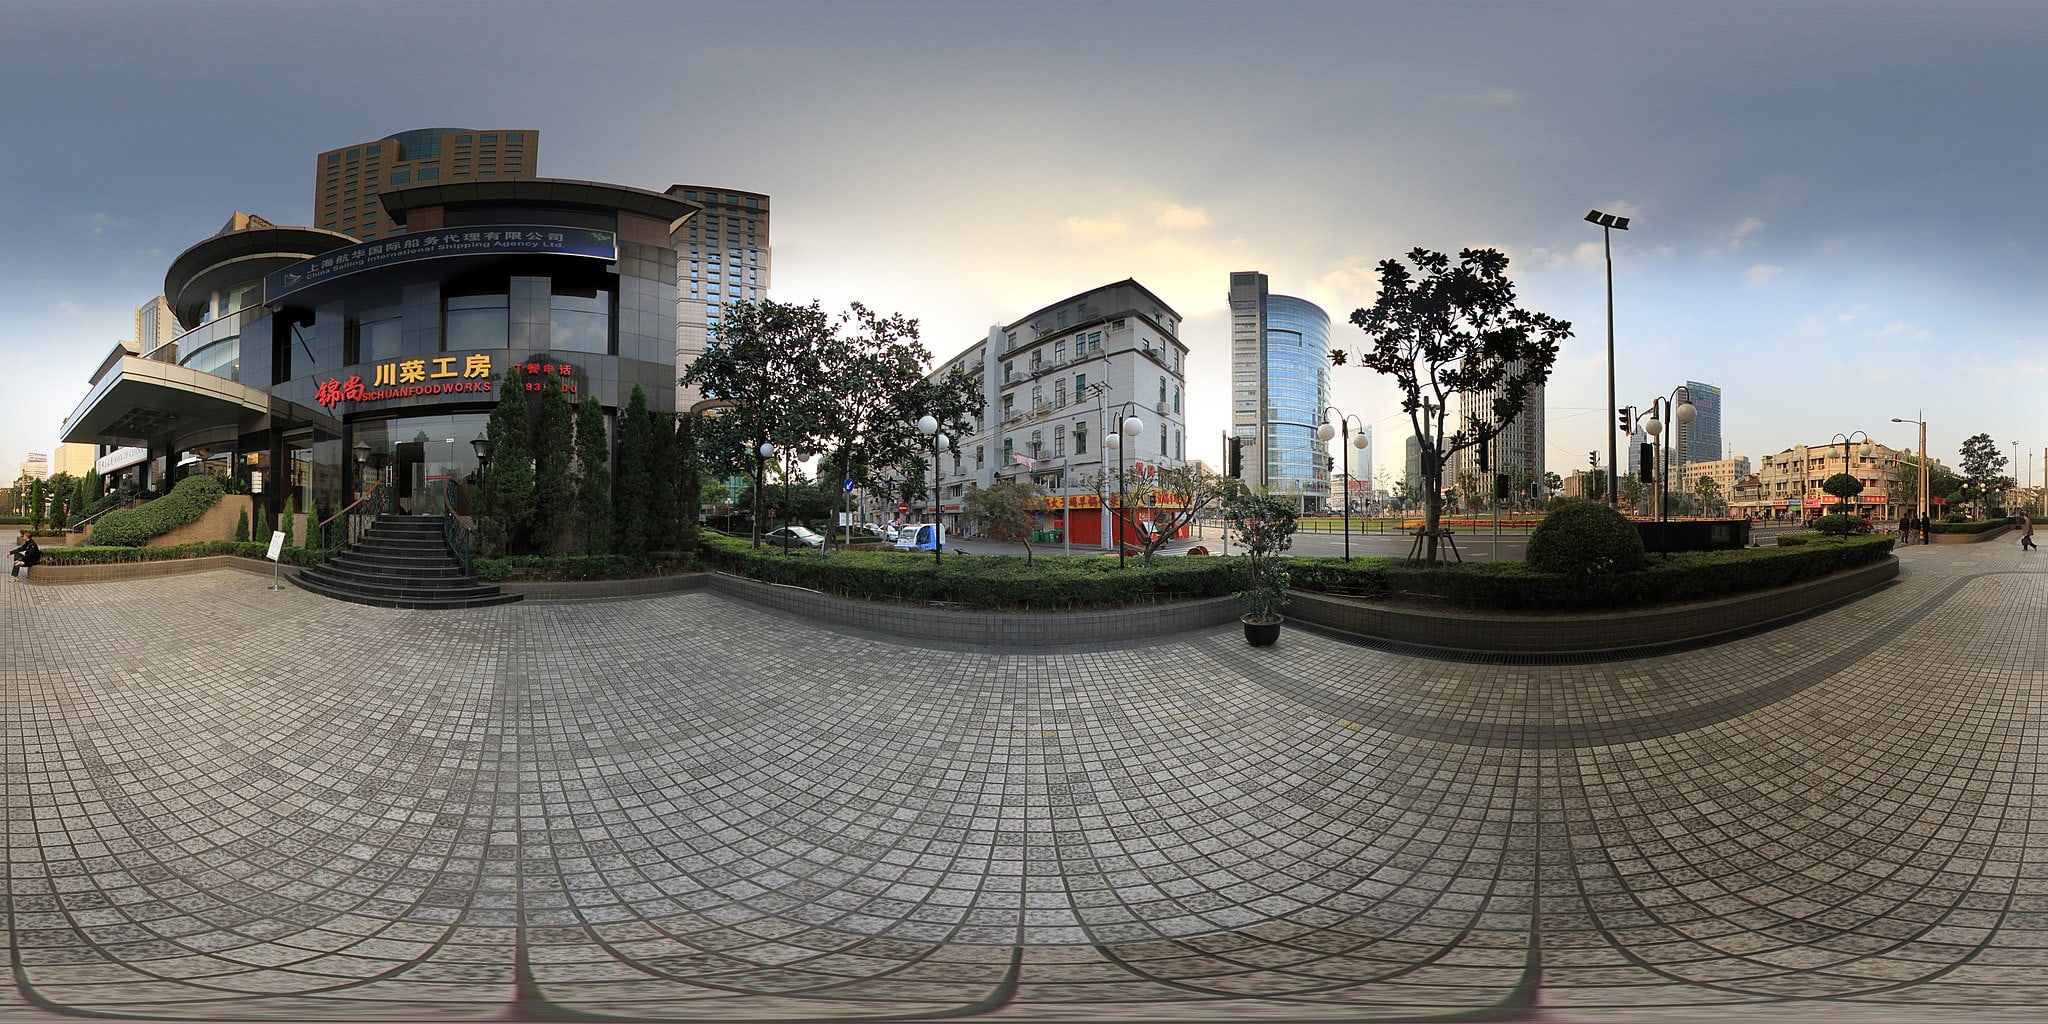 panorama photo